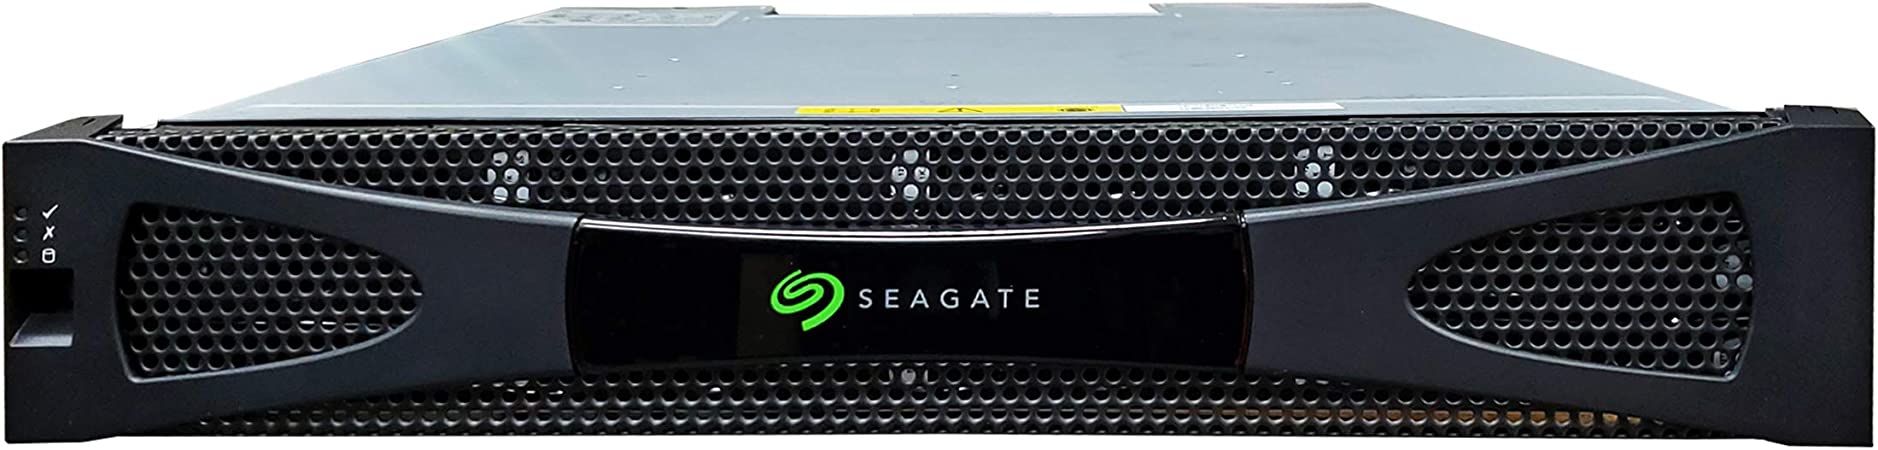 Seagate Exos X 2U12 12 Bay SAN Storage Array Rack Montable 2U con controladores iSCSI duales de 10Gb/s, discos duros SAS de 192 TB y 7,2 K (renovados)